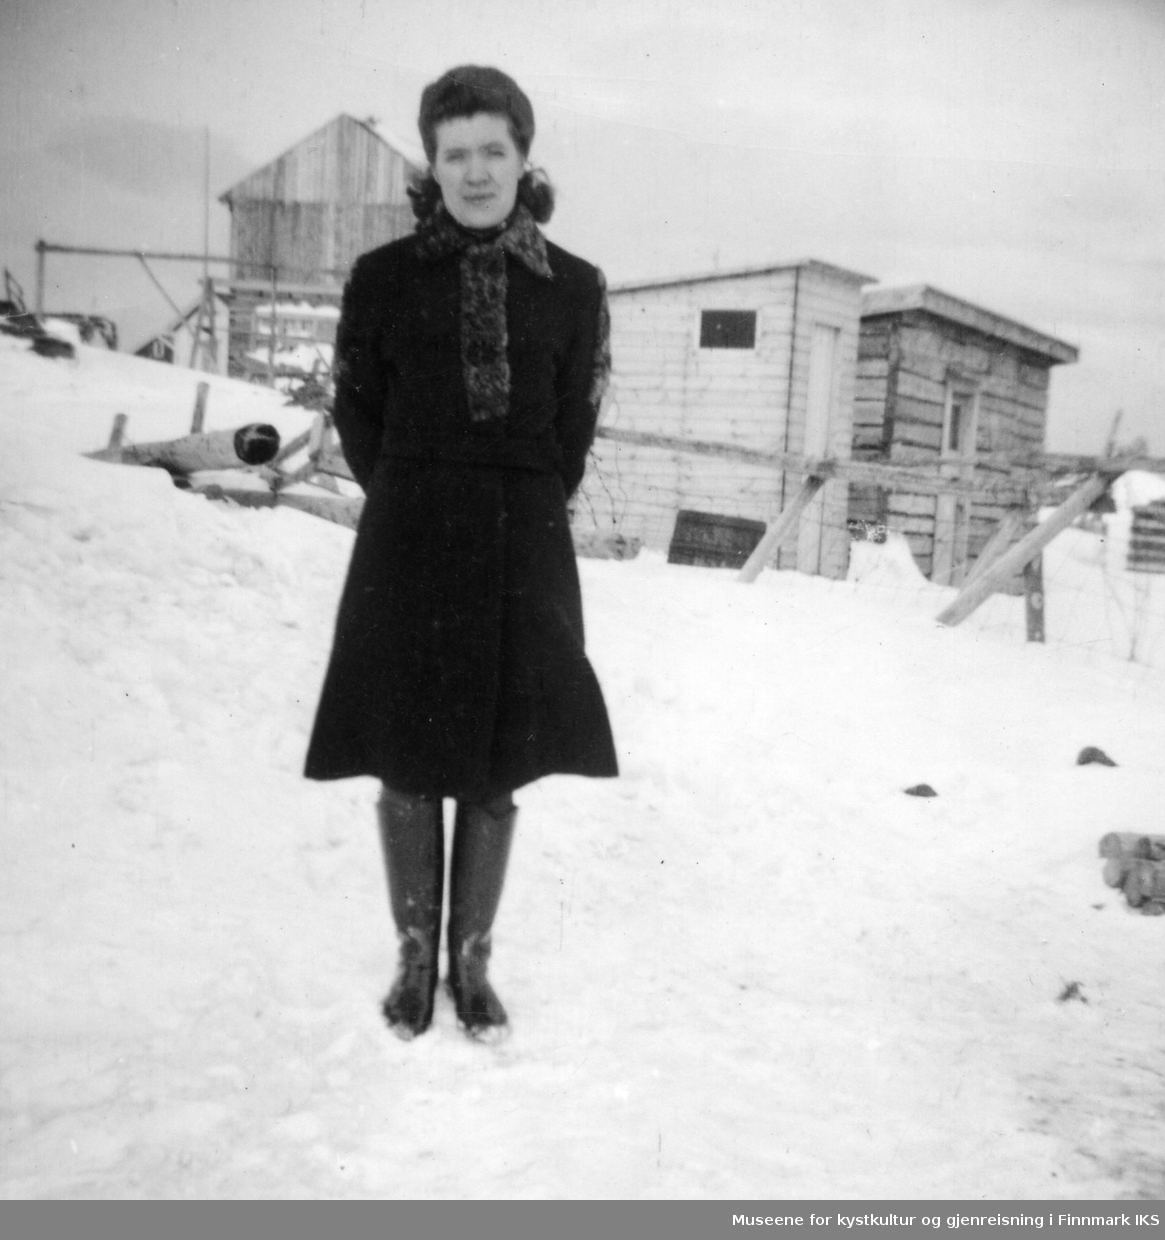 Rikarda Kristensen i kåpe og støvler. Arthur Ingebrigtsens hus i bakgrunnen.
Midt på bildet et utedo, ca 1954.